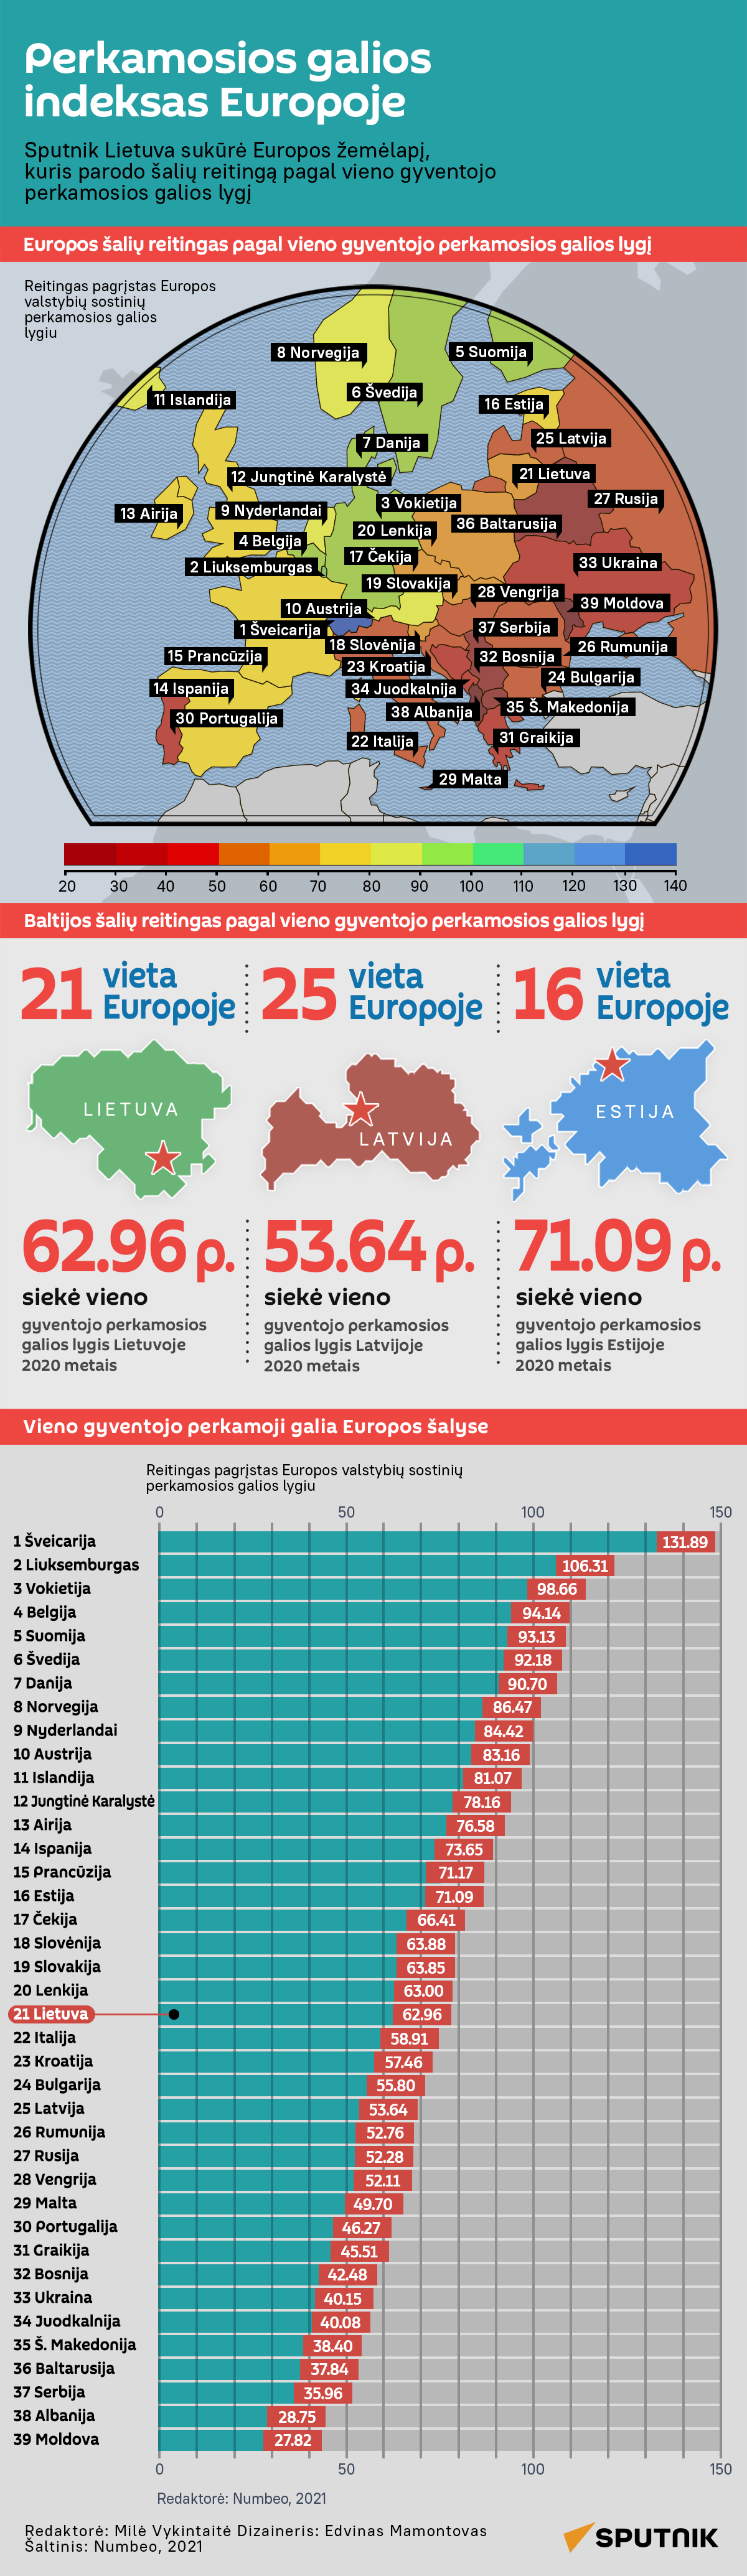 Perkamosios galios indeksas Europoje - Sputnik Lietuva